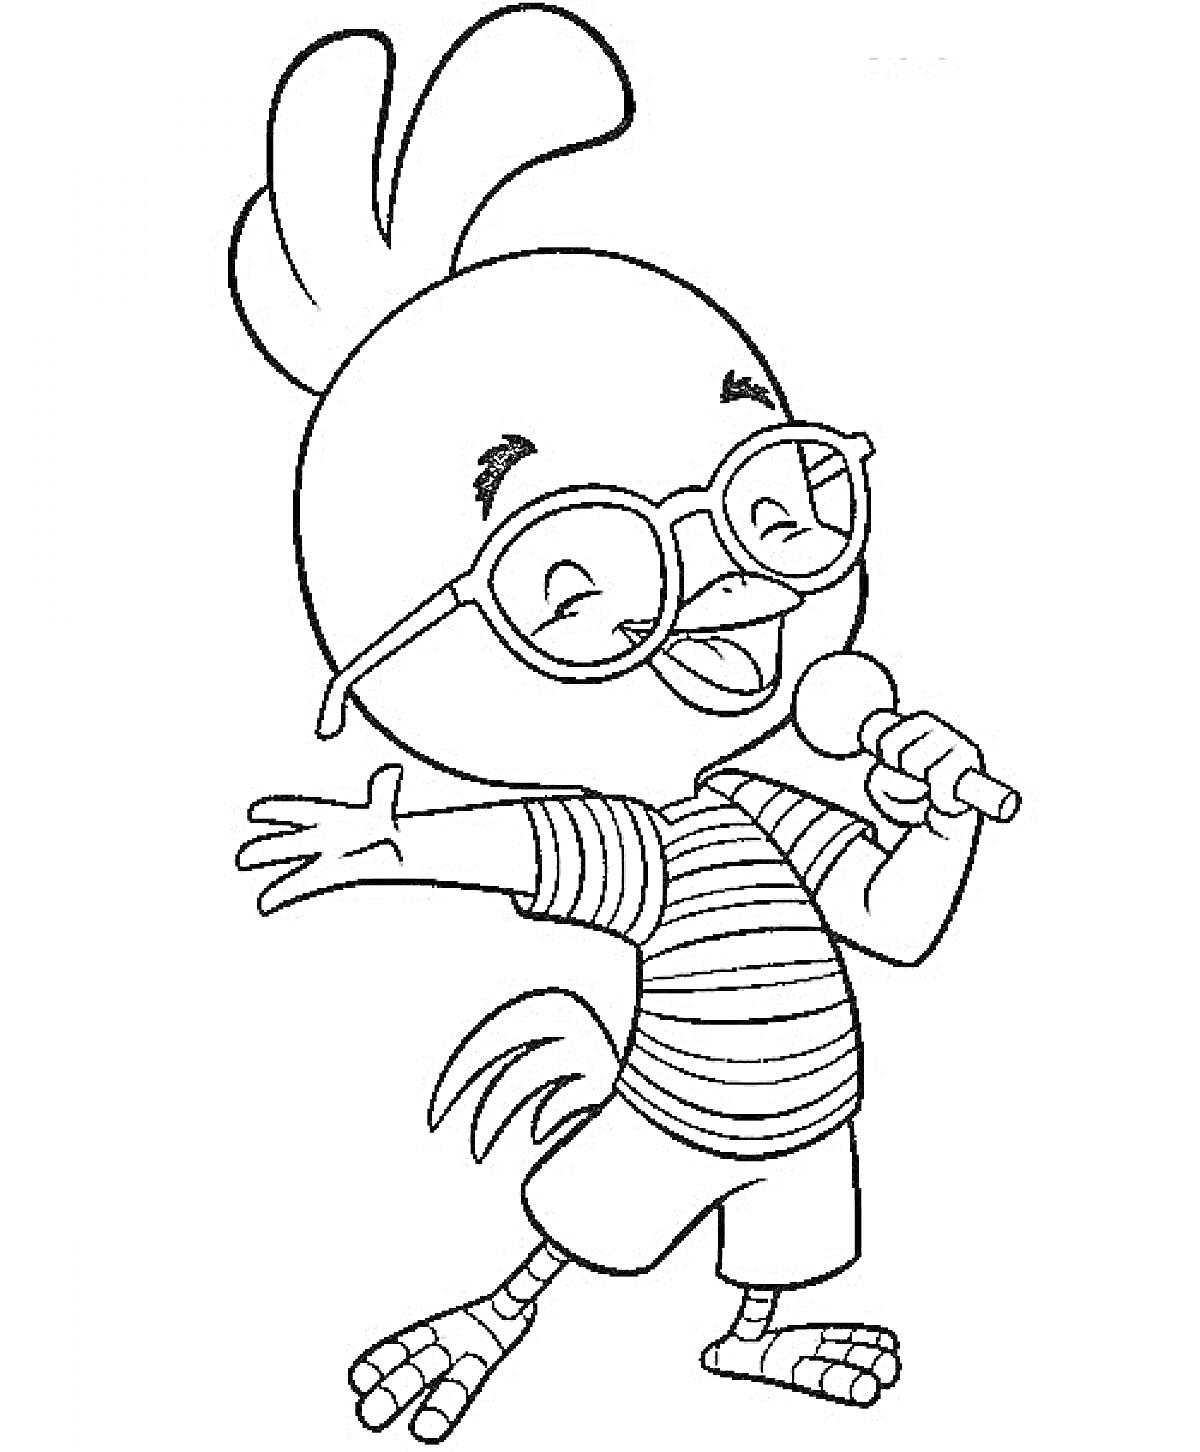 Раскраска Цыпленок в очках с микрофоном, стоящий на одной ноге в полосатой футболке